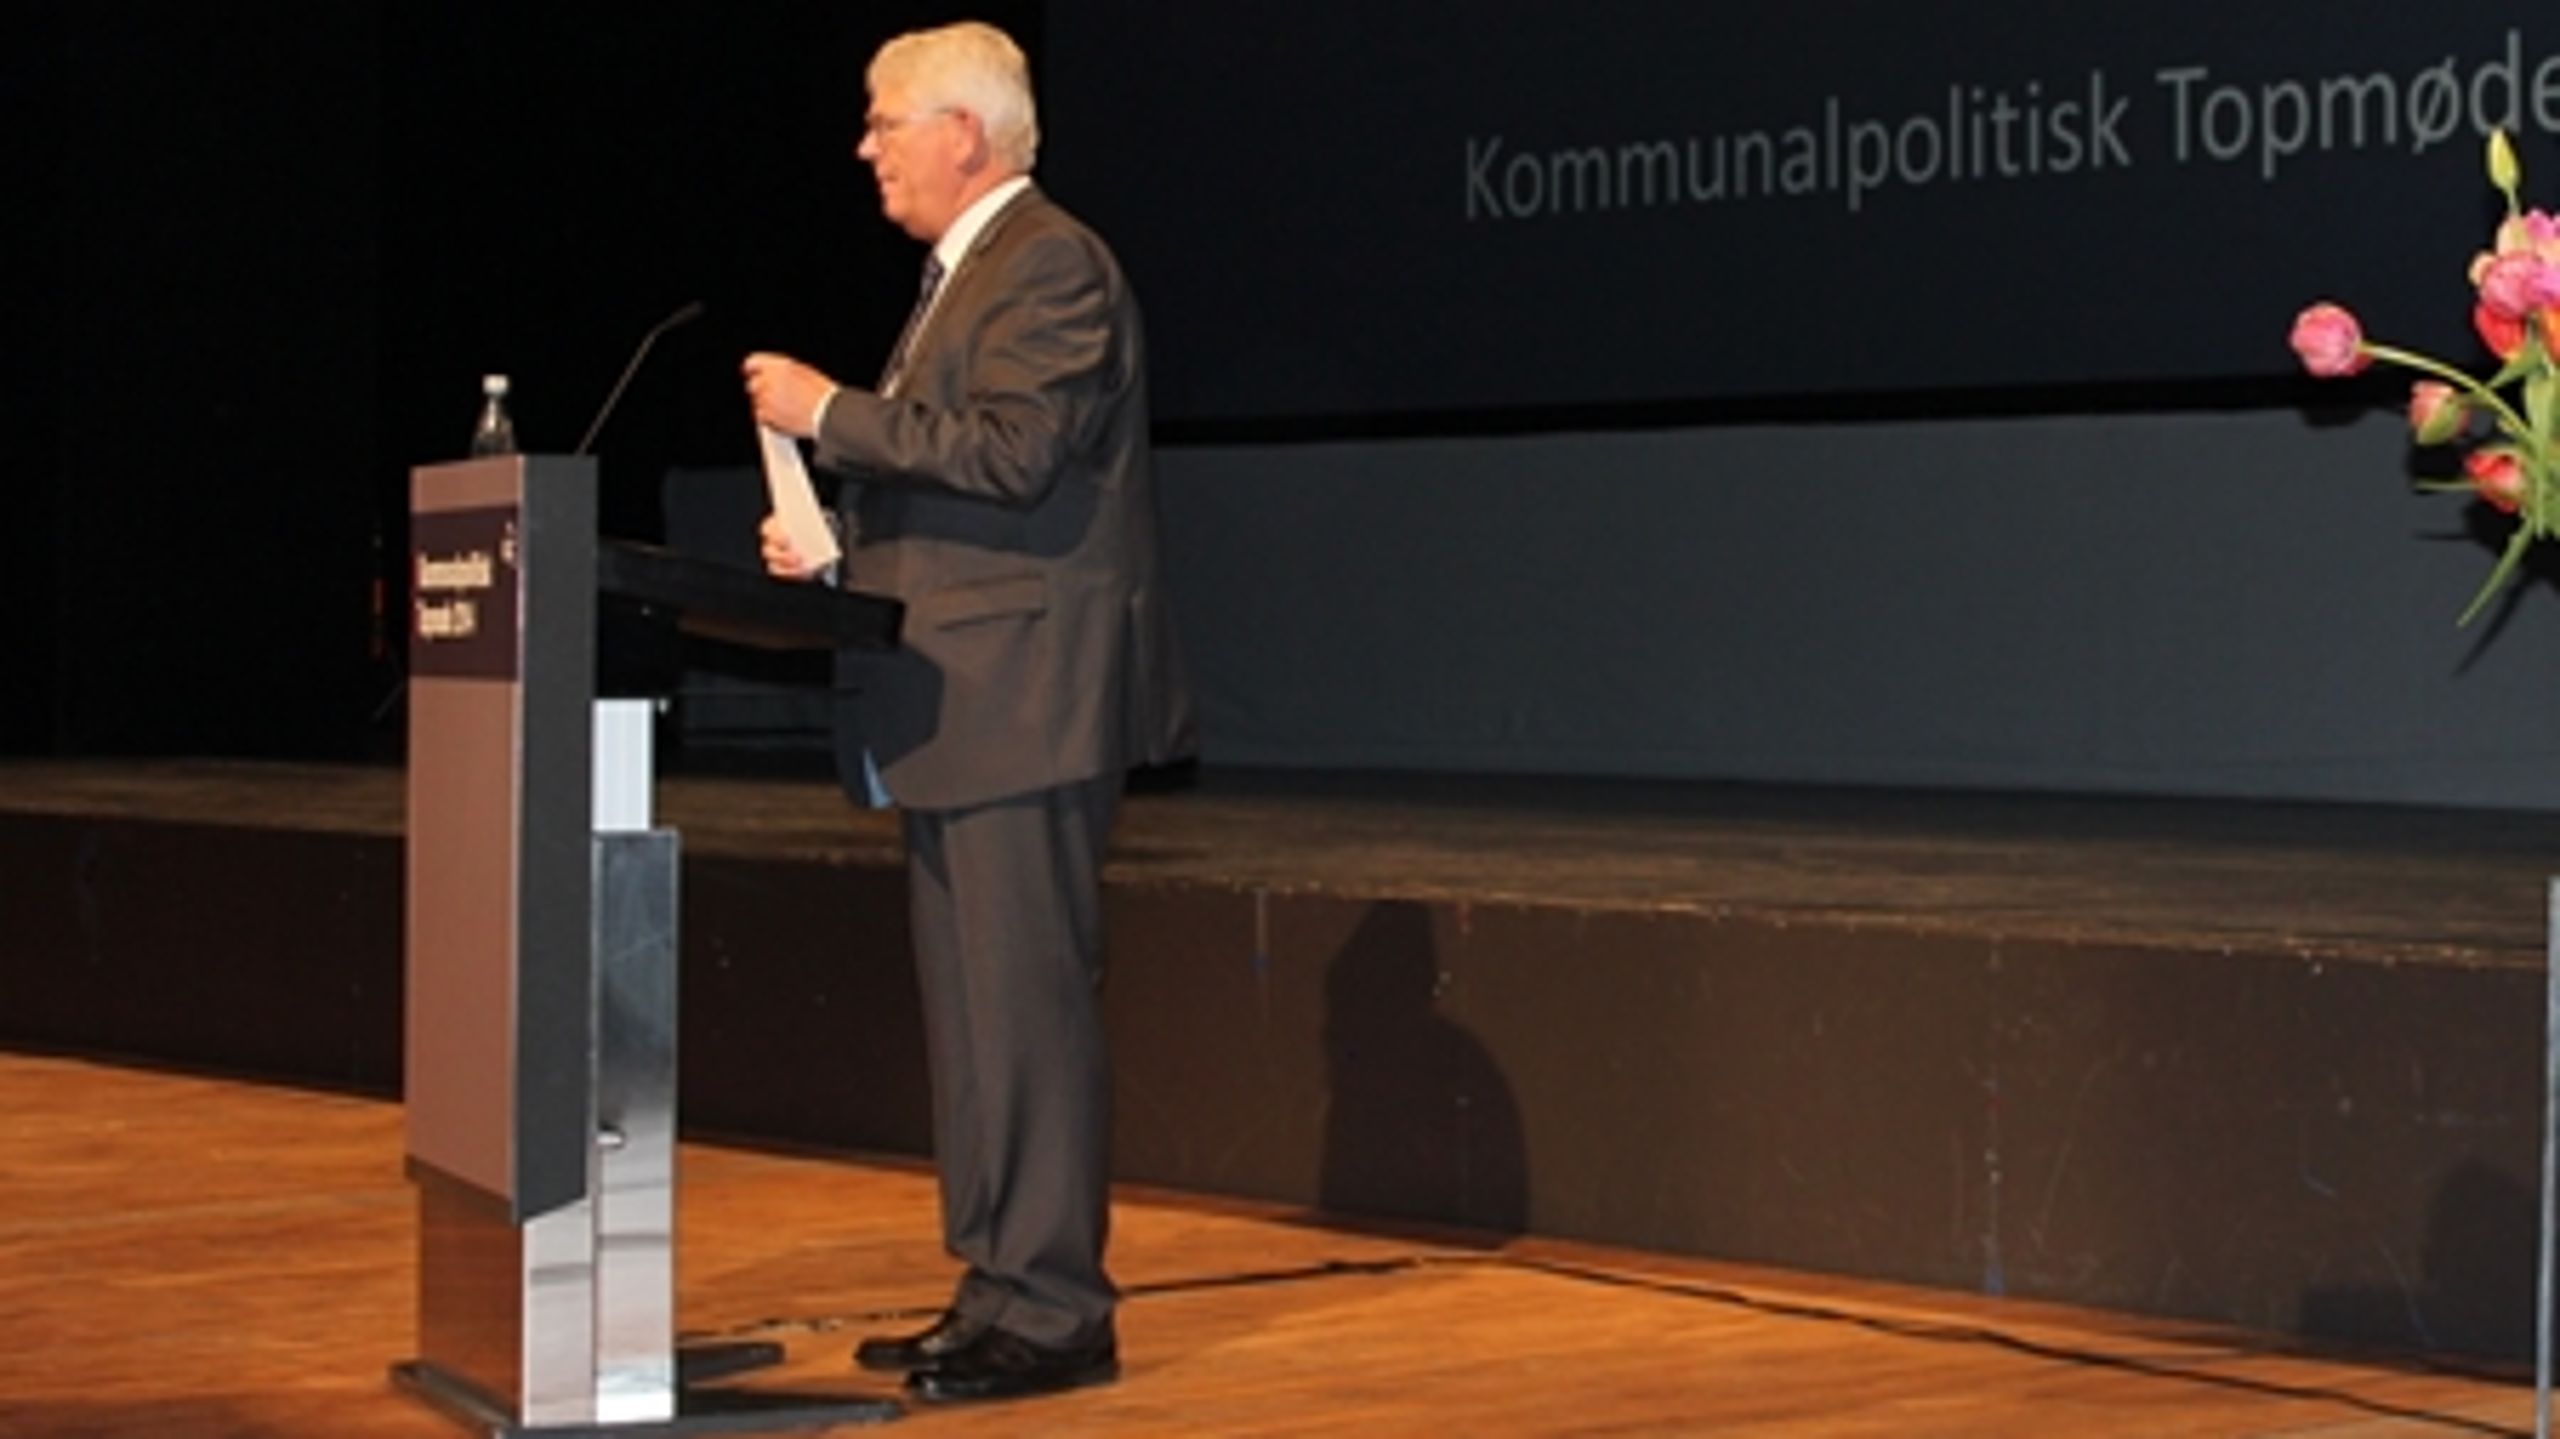 KL's snart tidligere formand Erik Nielsen (S) tog hul på den svære kommunale debat om omfordeling på tværs af kommunerne på årets kommunalpolitiske topmøde, som blev skudt i gang torsdag.